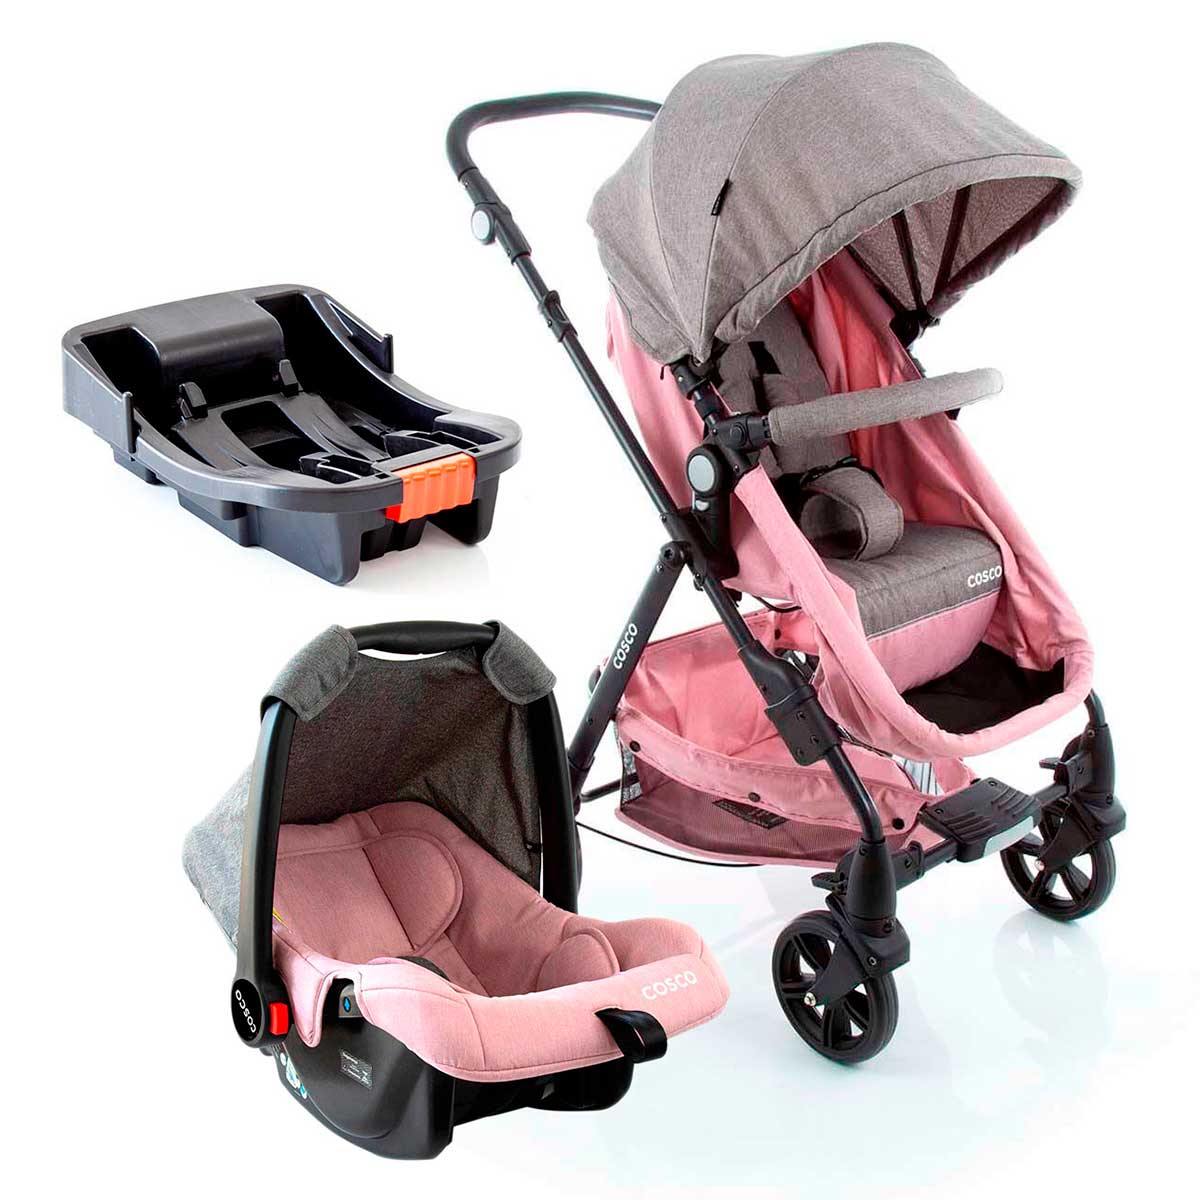 Carrinho de Bebê Travel System Cosco 4 Rodas 3 Posições Suporta Crianças de Até 15Kg Poppy com Base Rosa